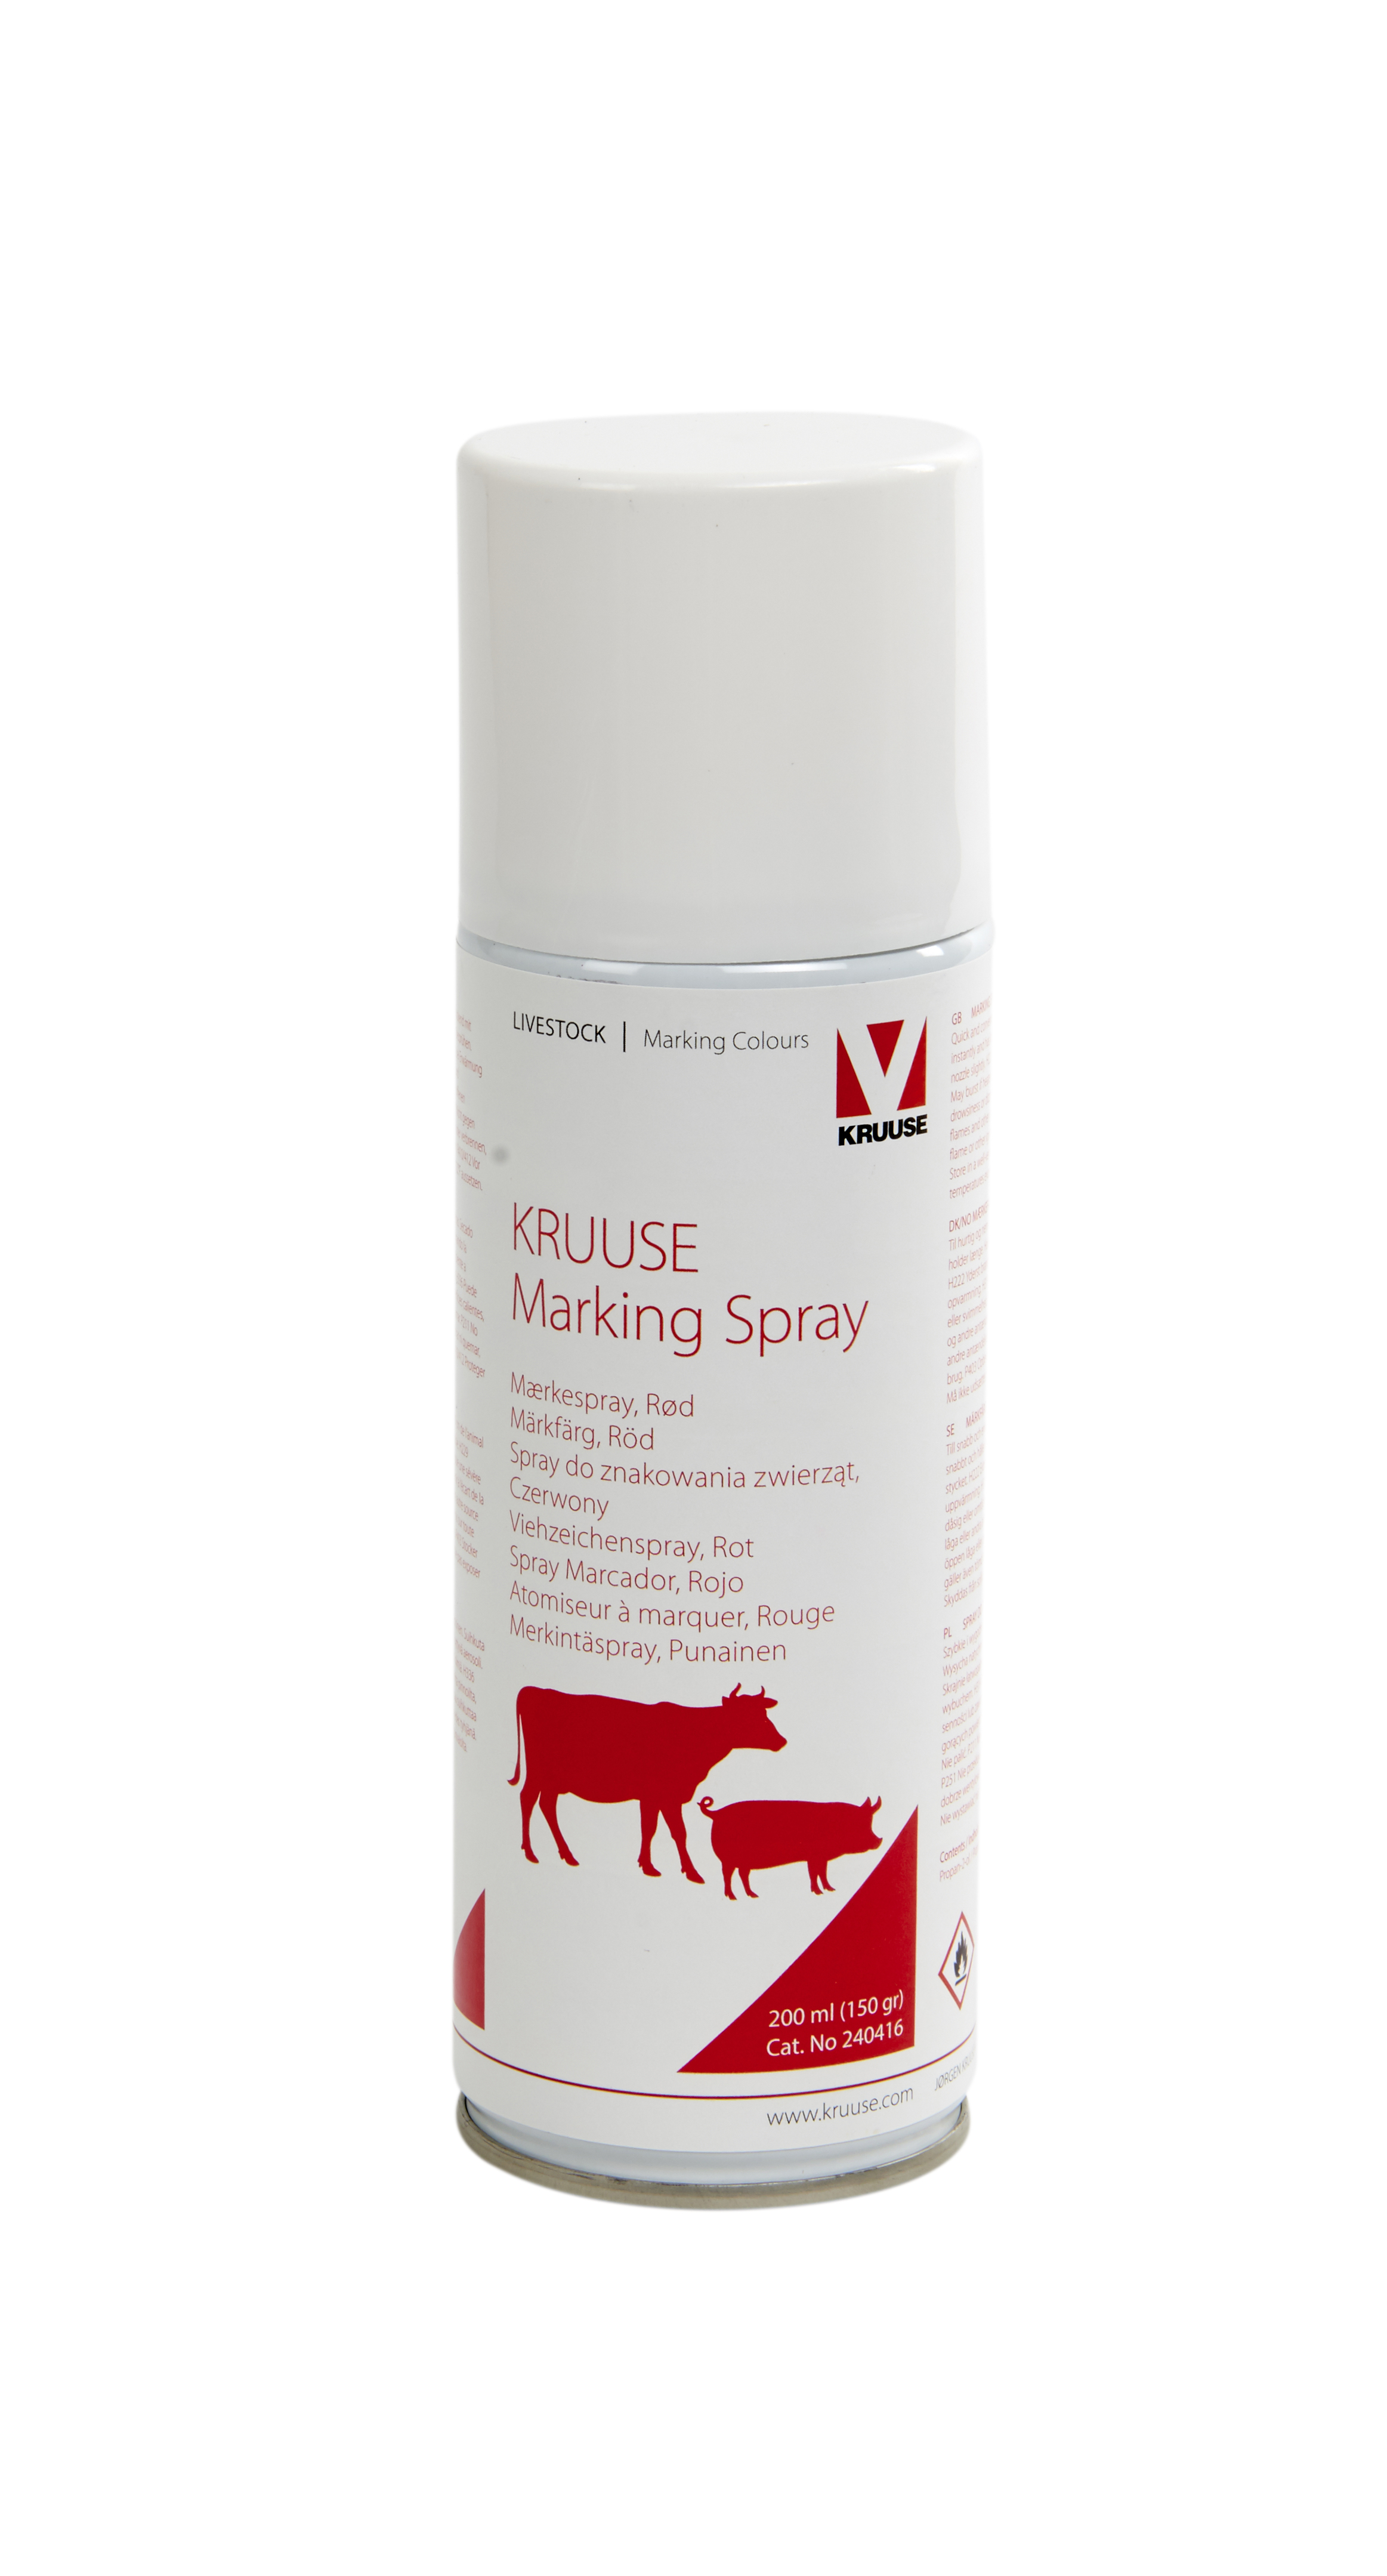 KRUUSE marking spray, red, 200 ml, 12/pk